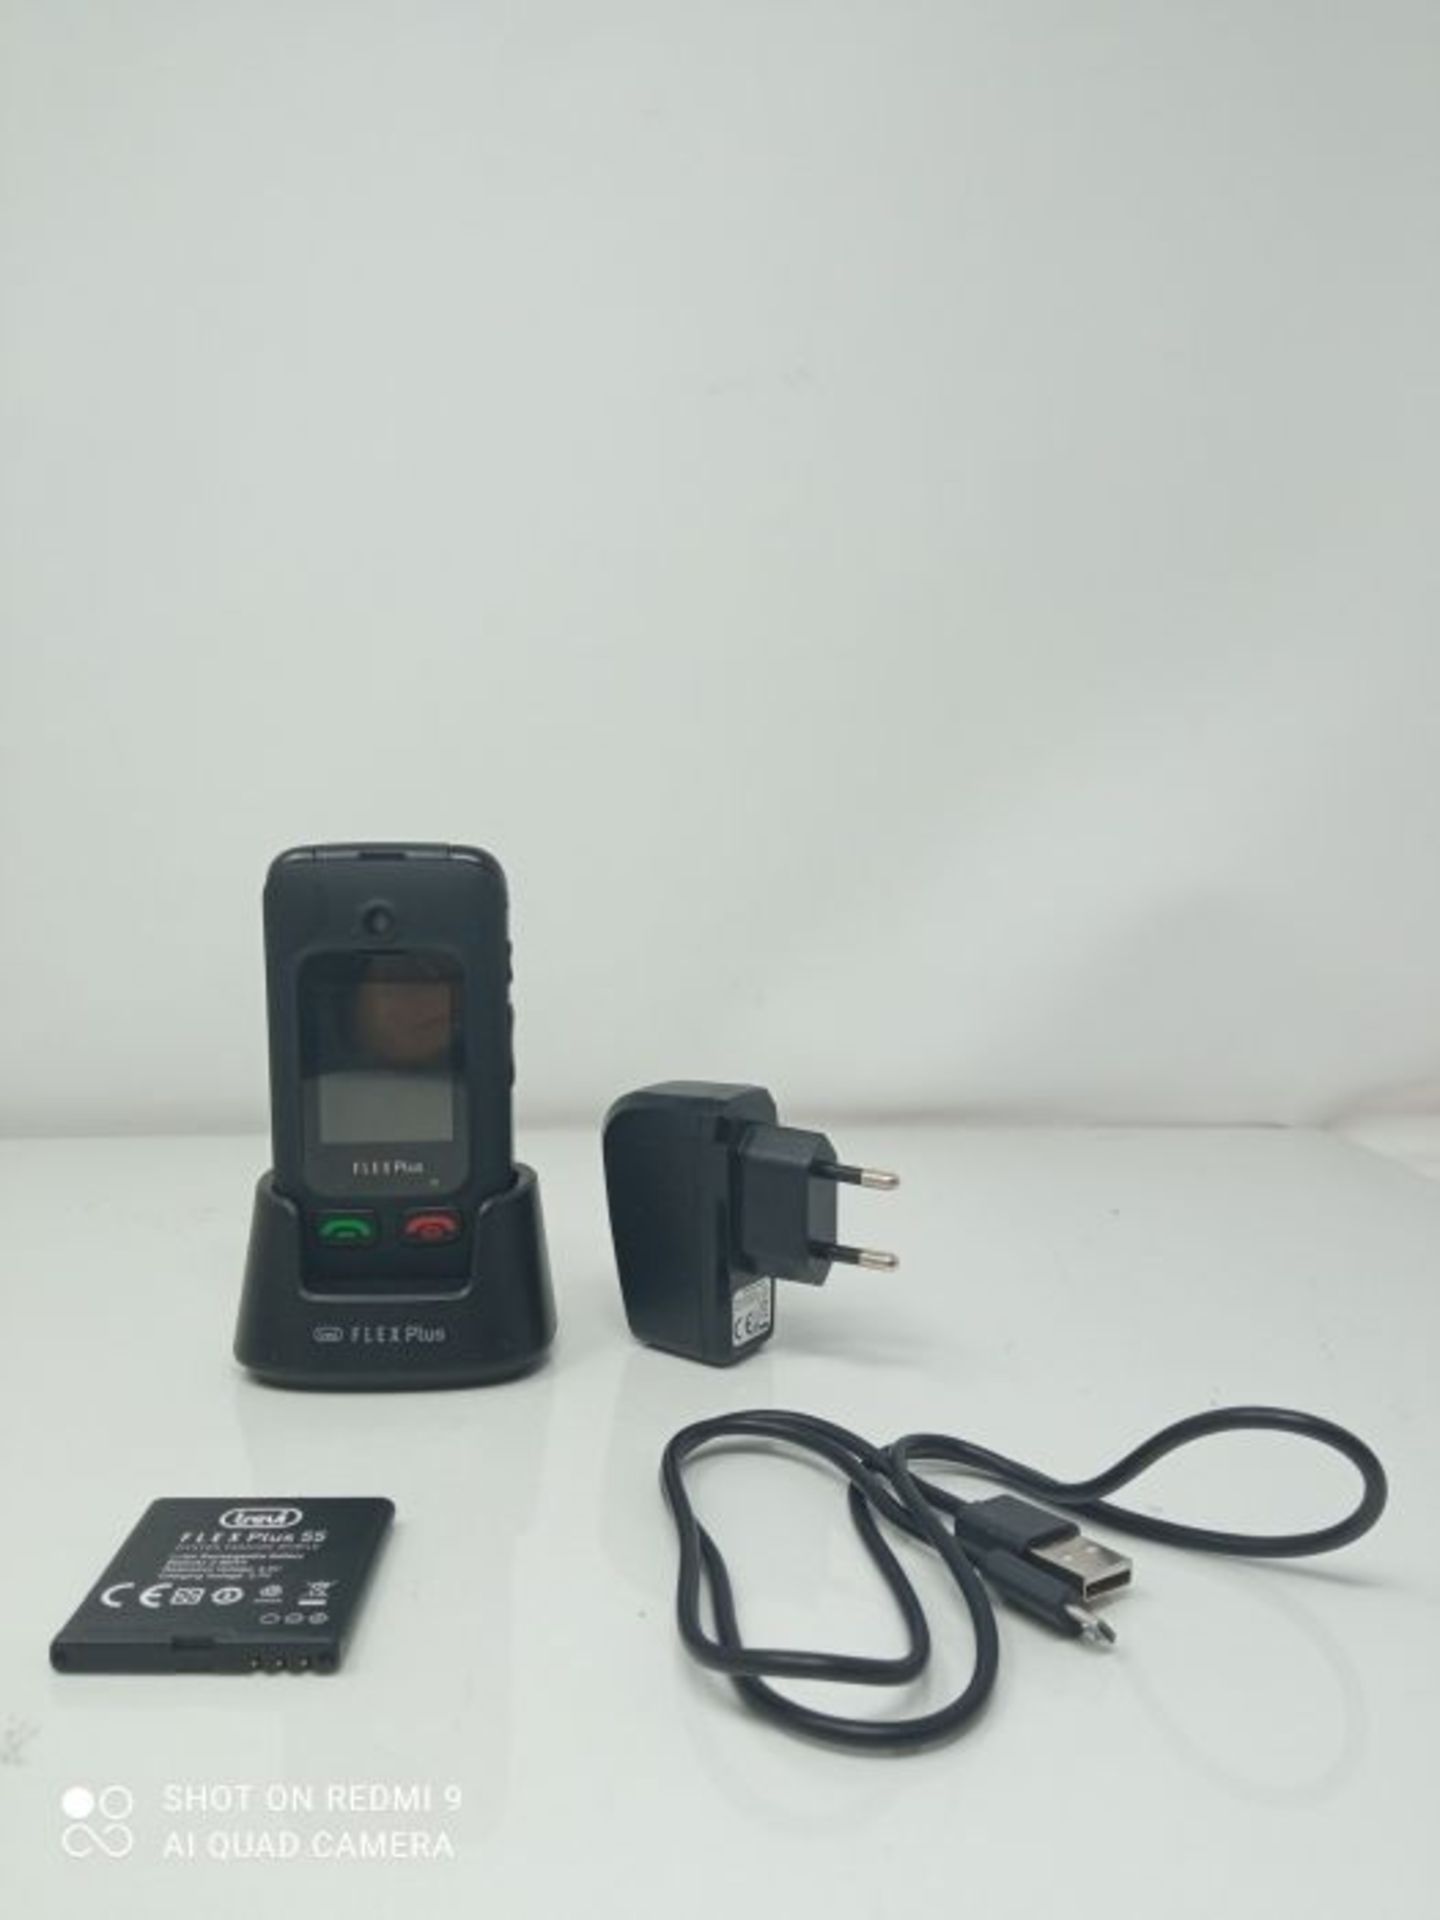 RRP £54.00 Trevi FLEX PLUS 55 Telefono Cellulare per Anziani a Conchiglia con grandi tasti, grand - Image 2 of 2